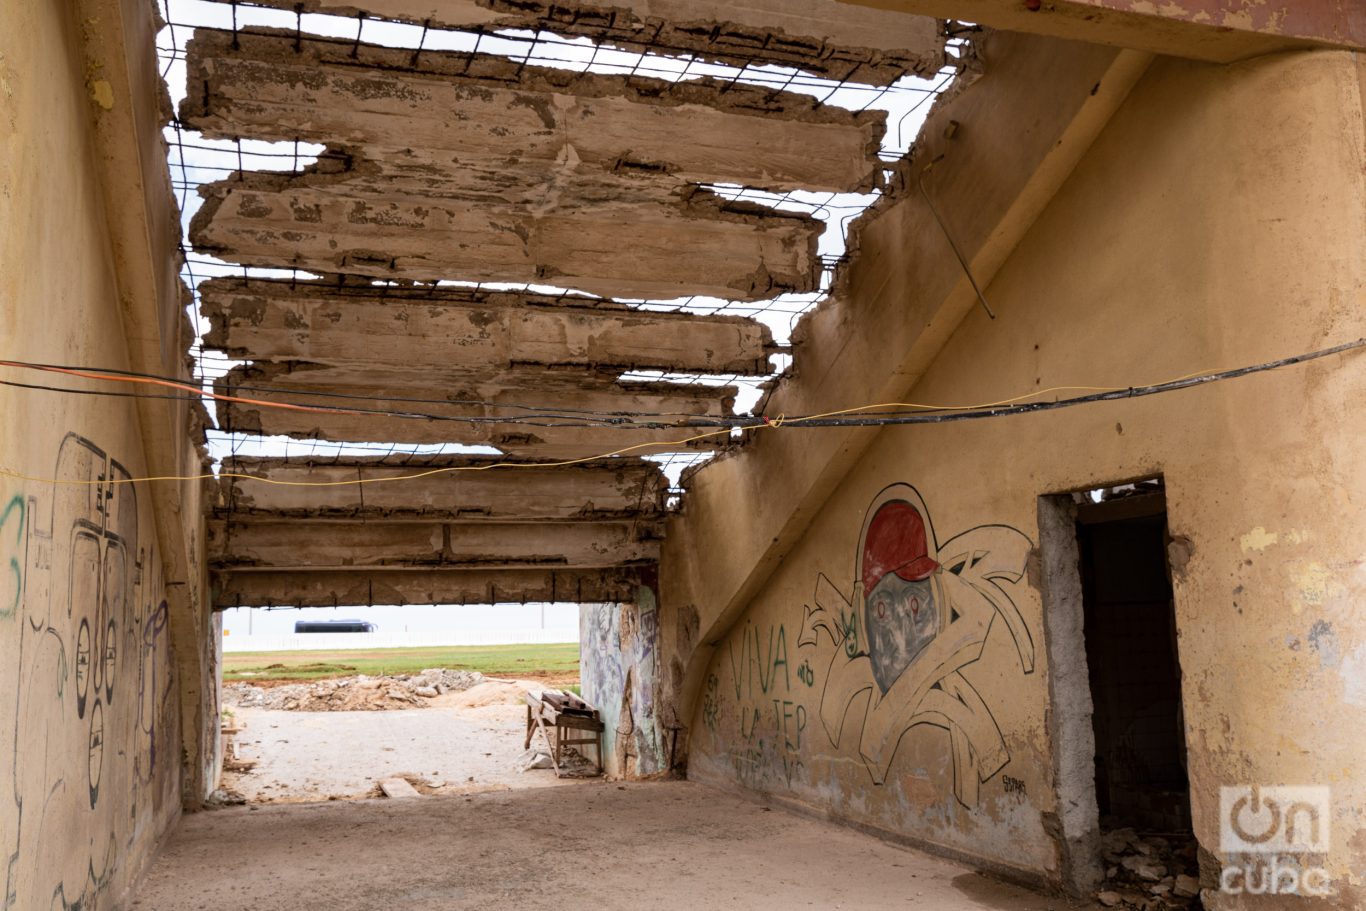 Debajo de las gradas puede verse el nivel de deterioro del lugar. Foto: Jorge Ricardo.